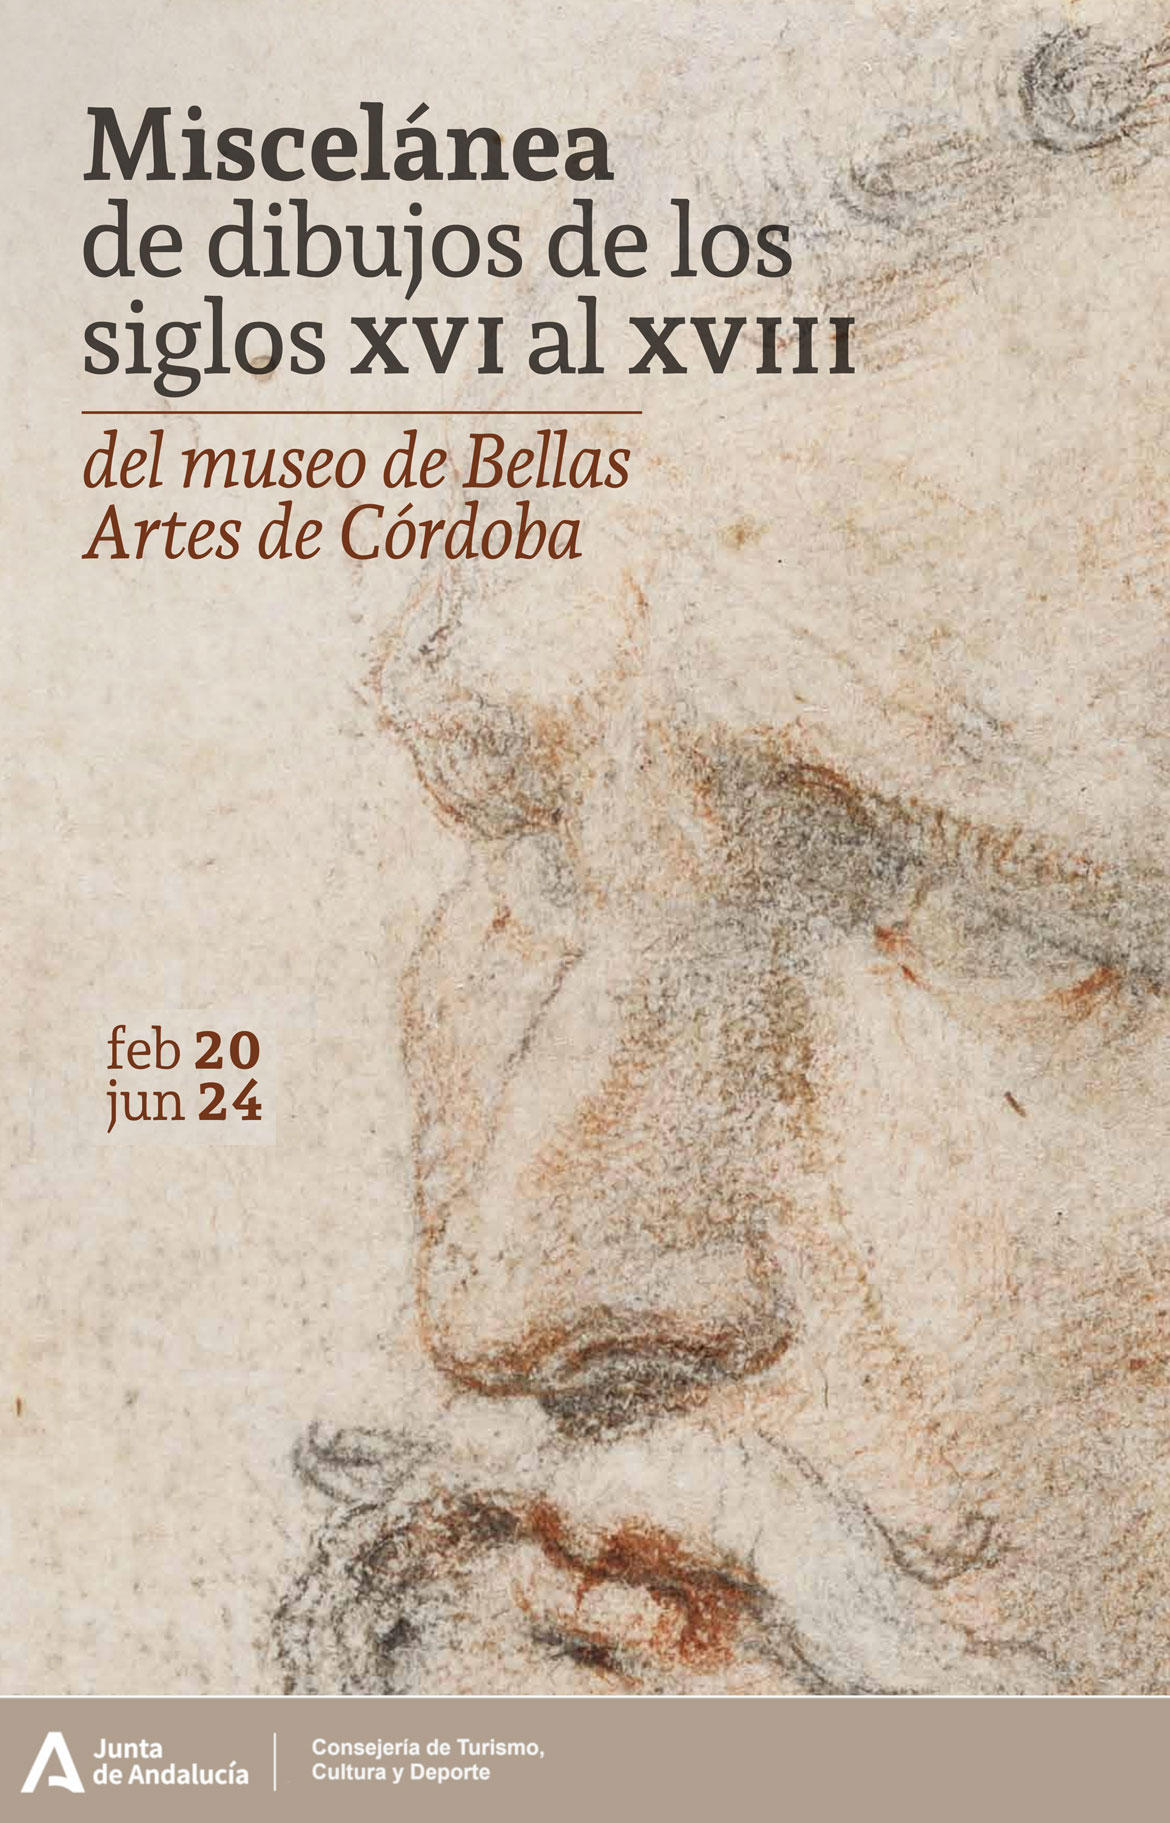 Miscelánea de Dibujos de los siglos XVI al XVIII del Museo de Bellas Artes (Córdoba - España)